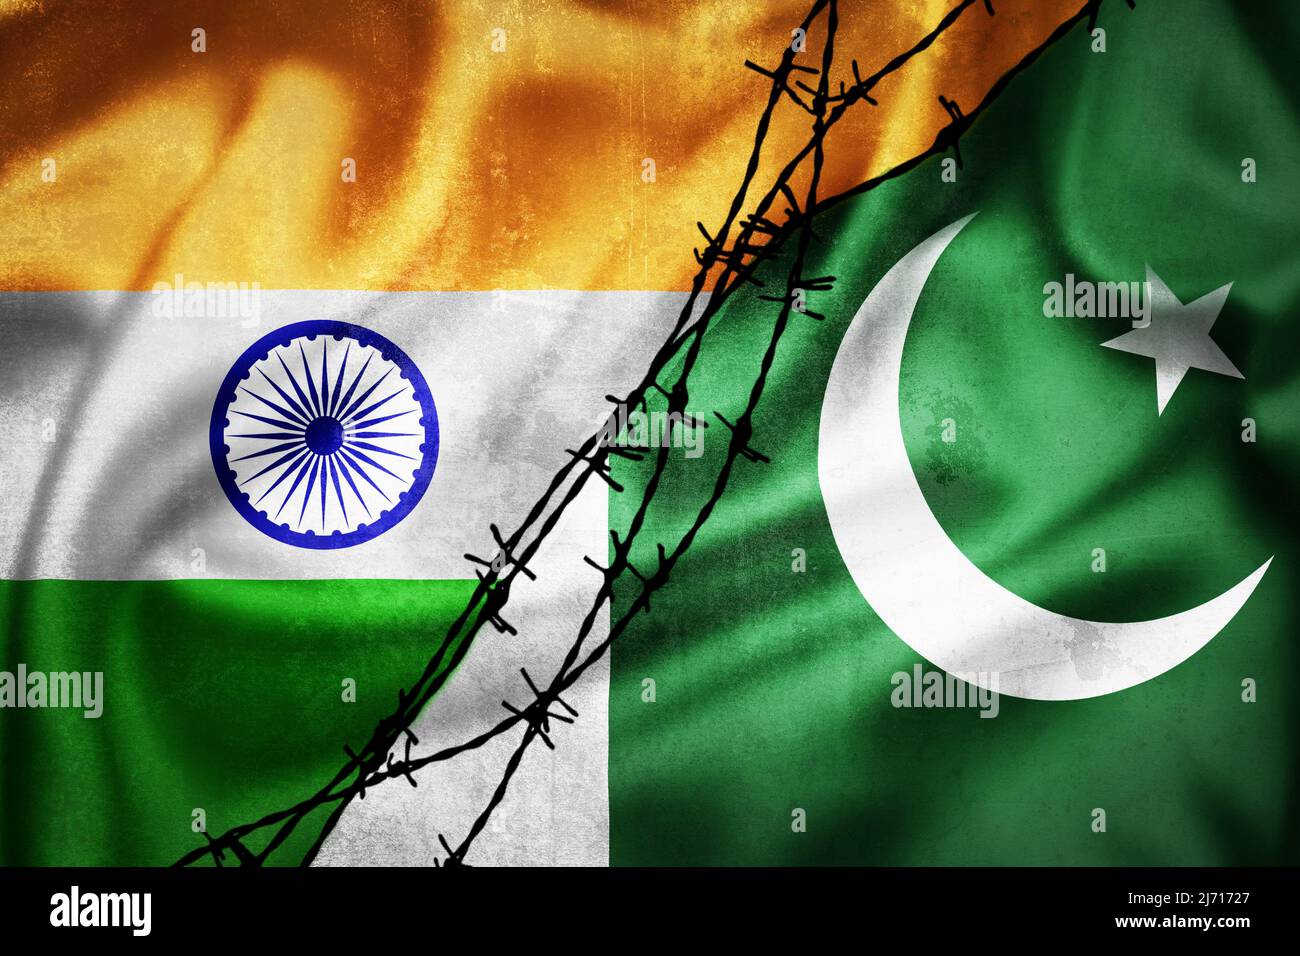 Bandiere di grunge di India e Pakistan divise da illustrazione del filo del barb, concetto di relazioni tese fra India e Pakistan Foto Stock